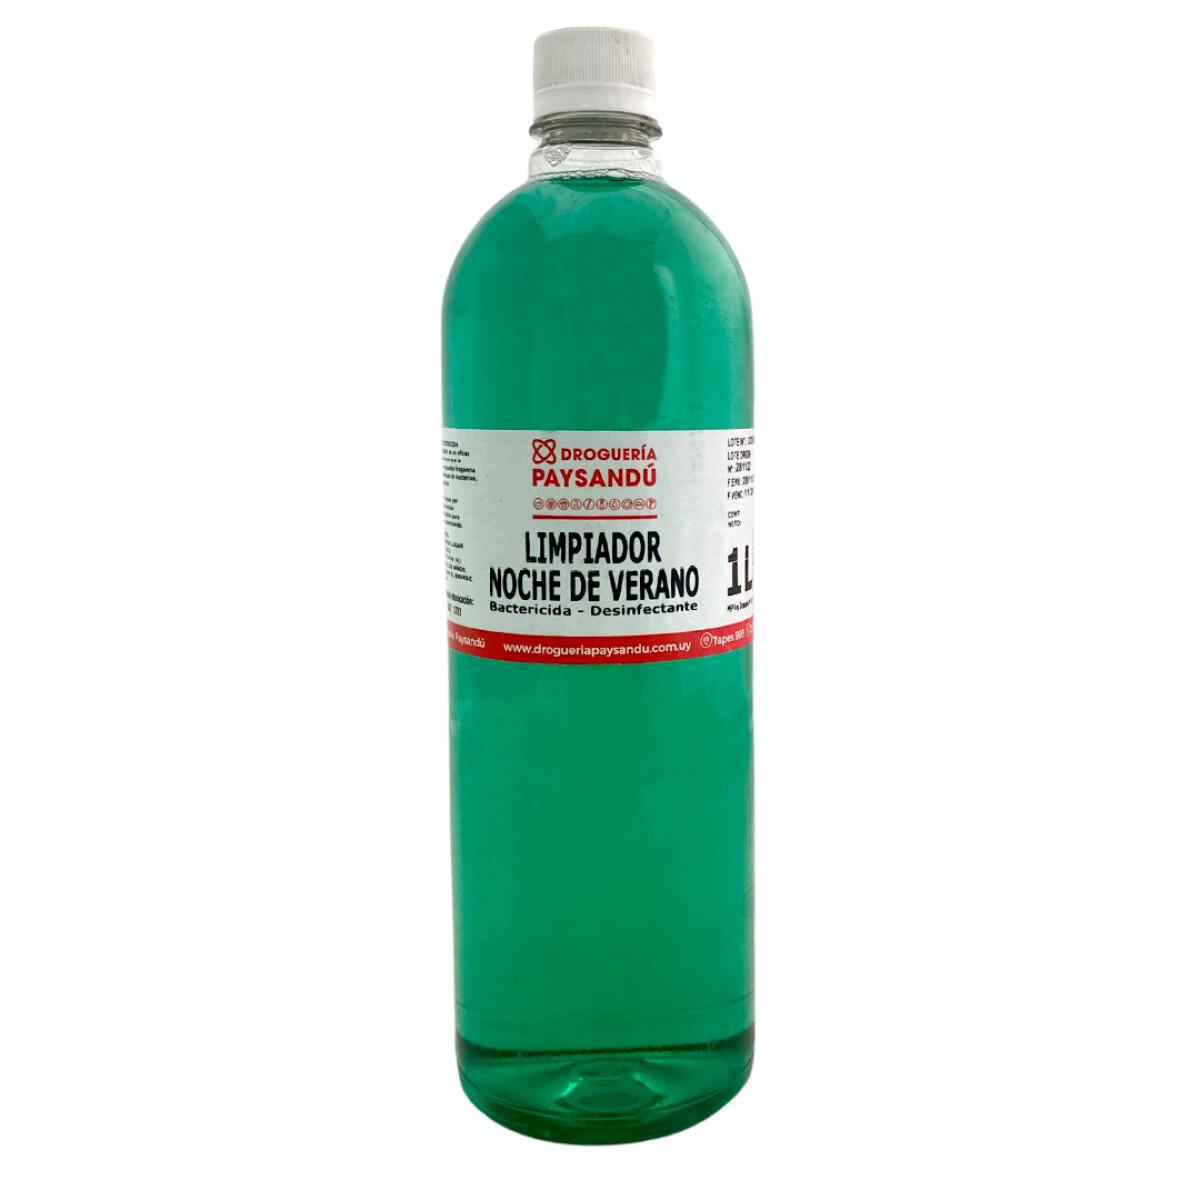 Limpiador noche de verano bactericida - desinfectante - 1 L 